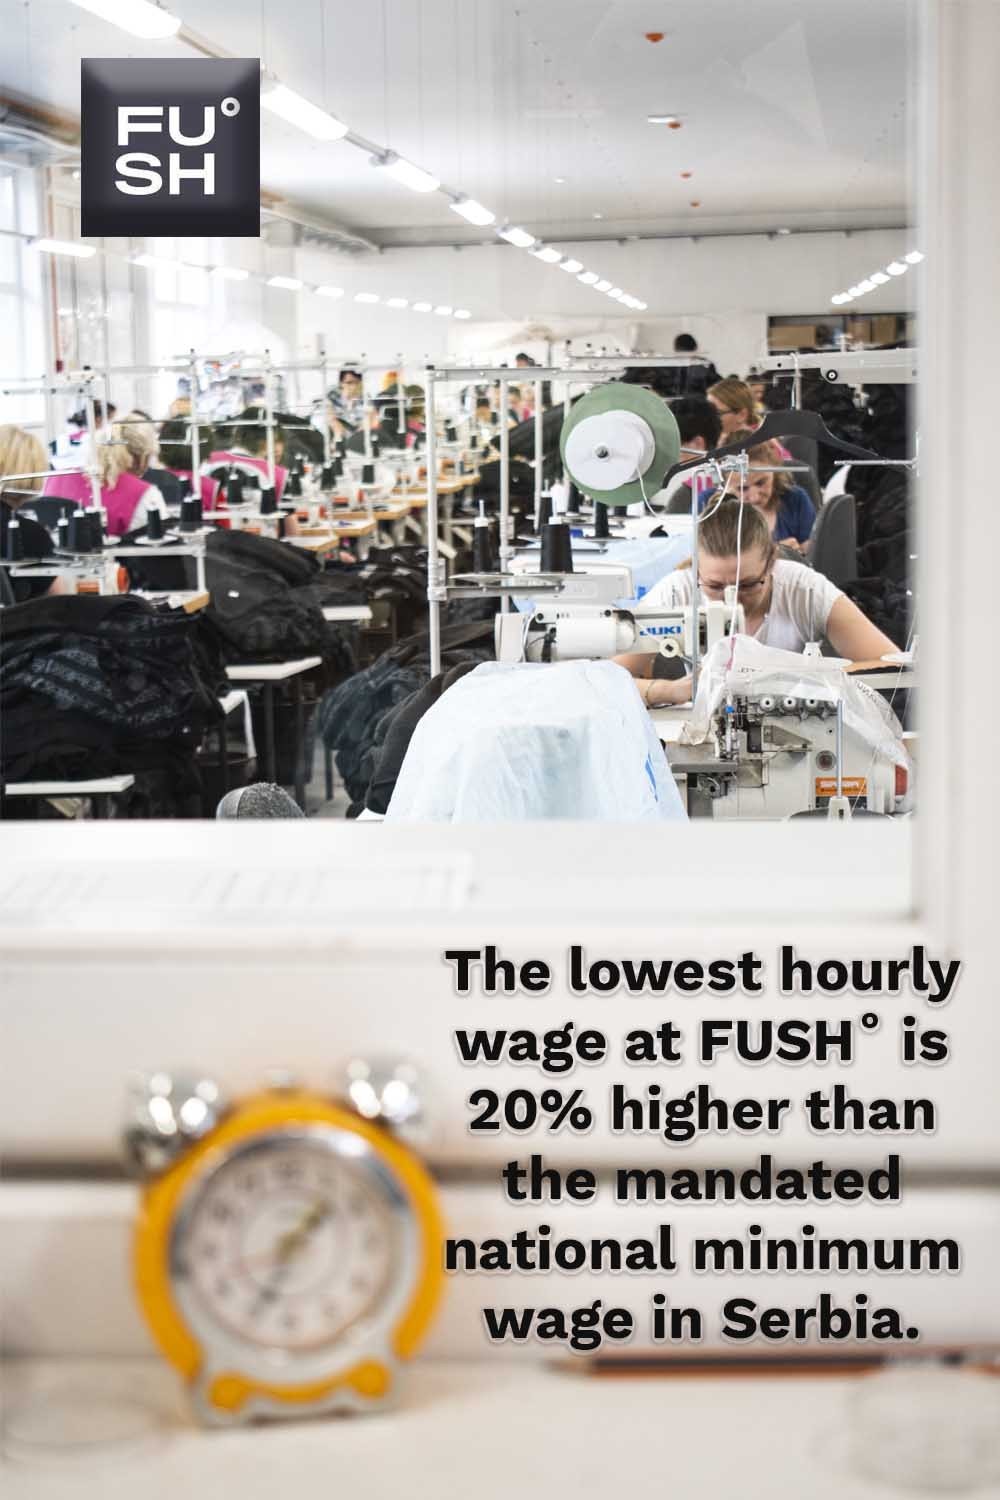 Wages at FUSH